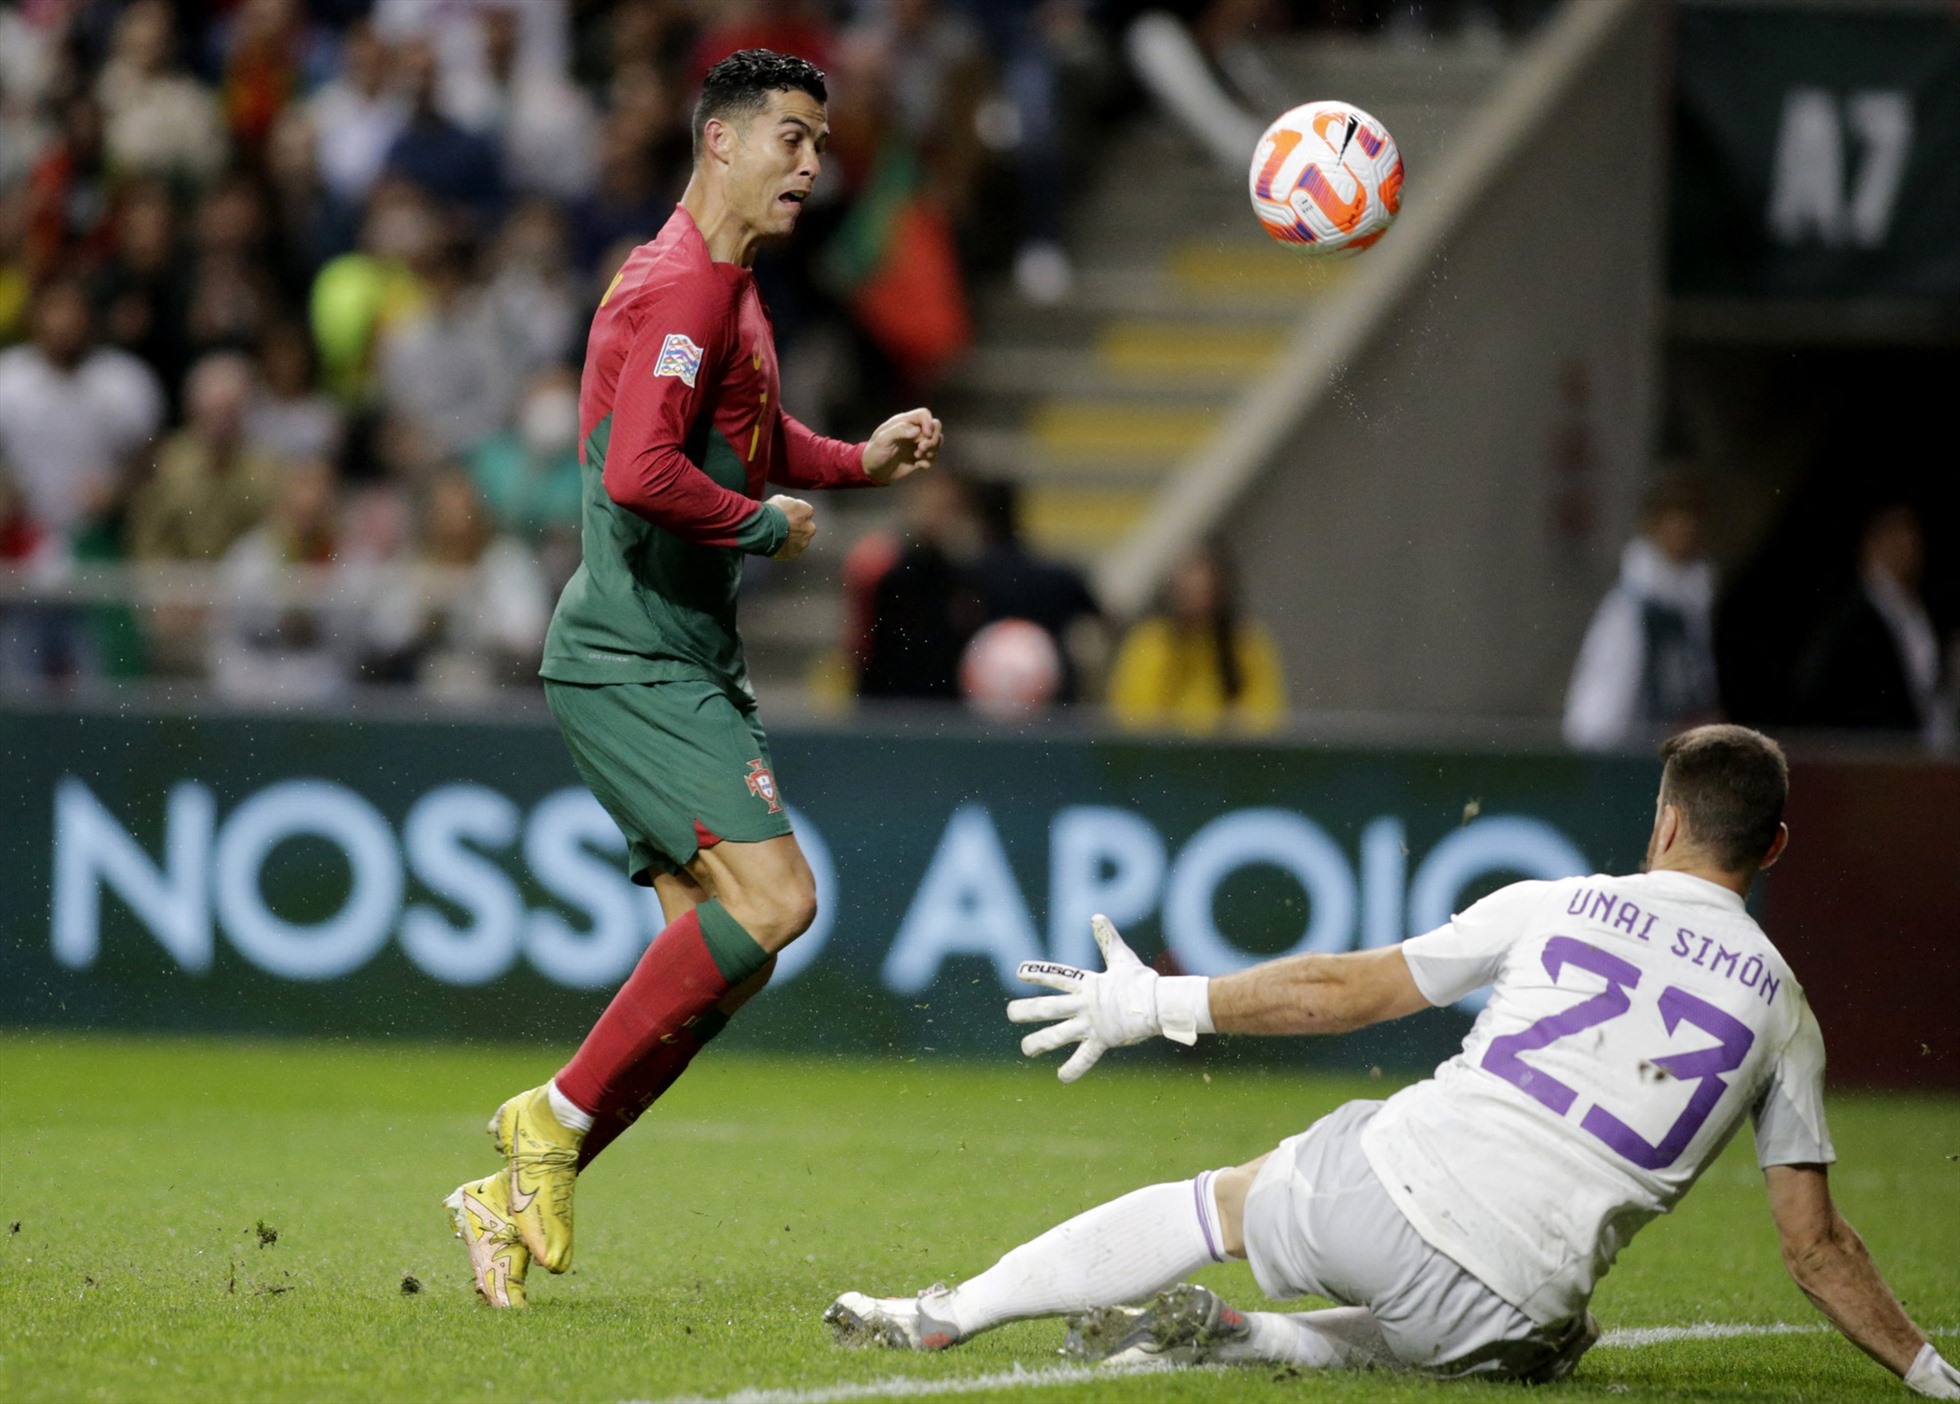 Từ đầu mùa đến giờ, Ronaldo mới có 1 bàn cho Manchester United trên chấm penalty tại Europa League. Ảnh: AFP